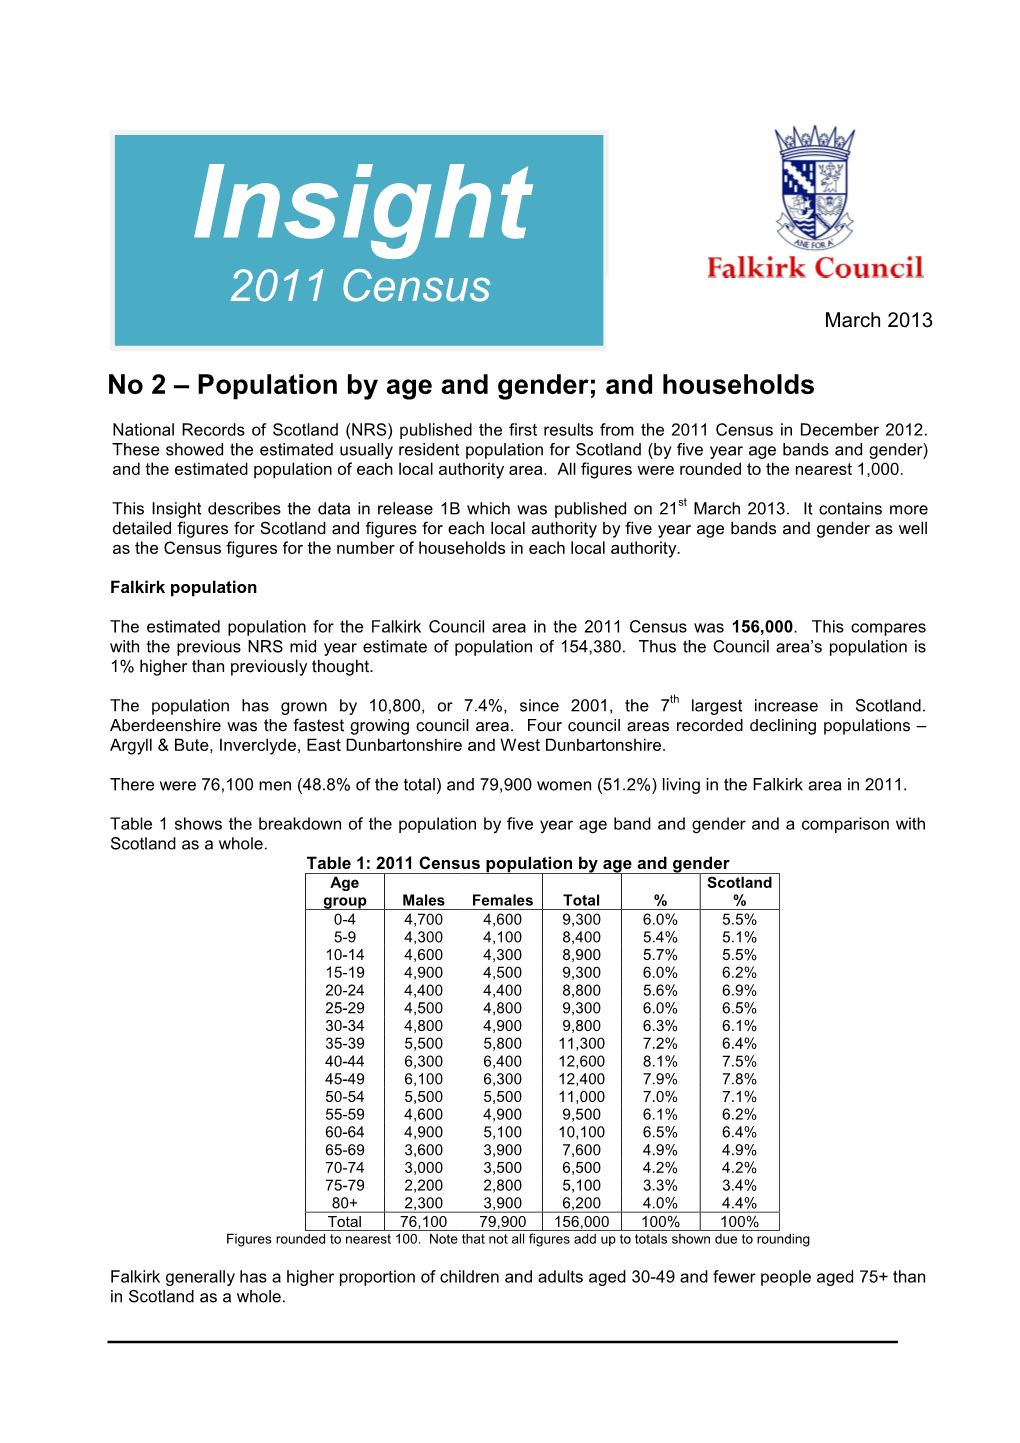 Release 1B 2011 Census